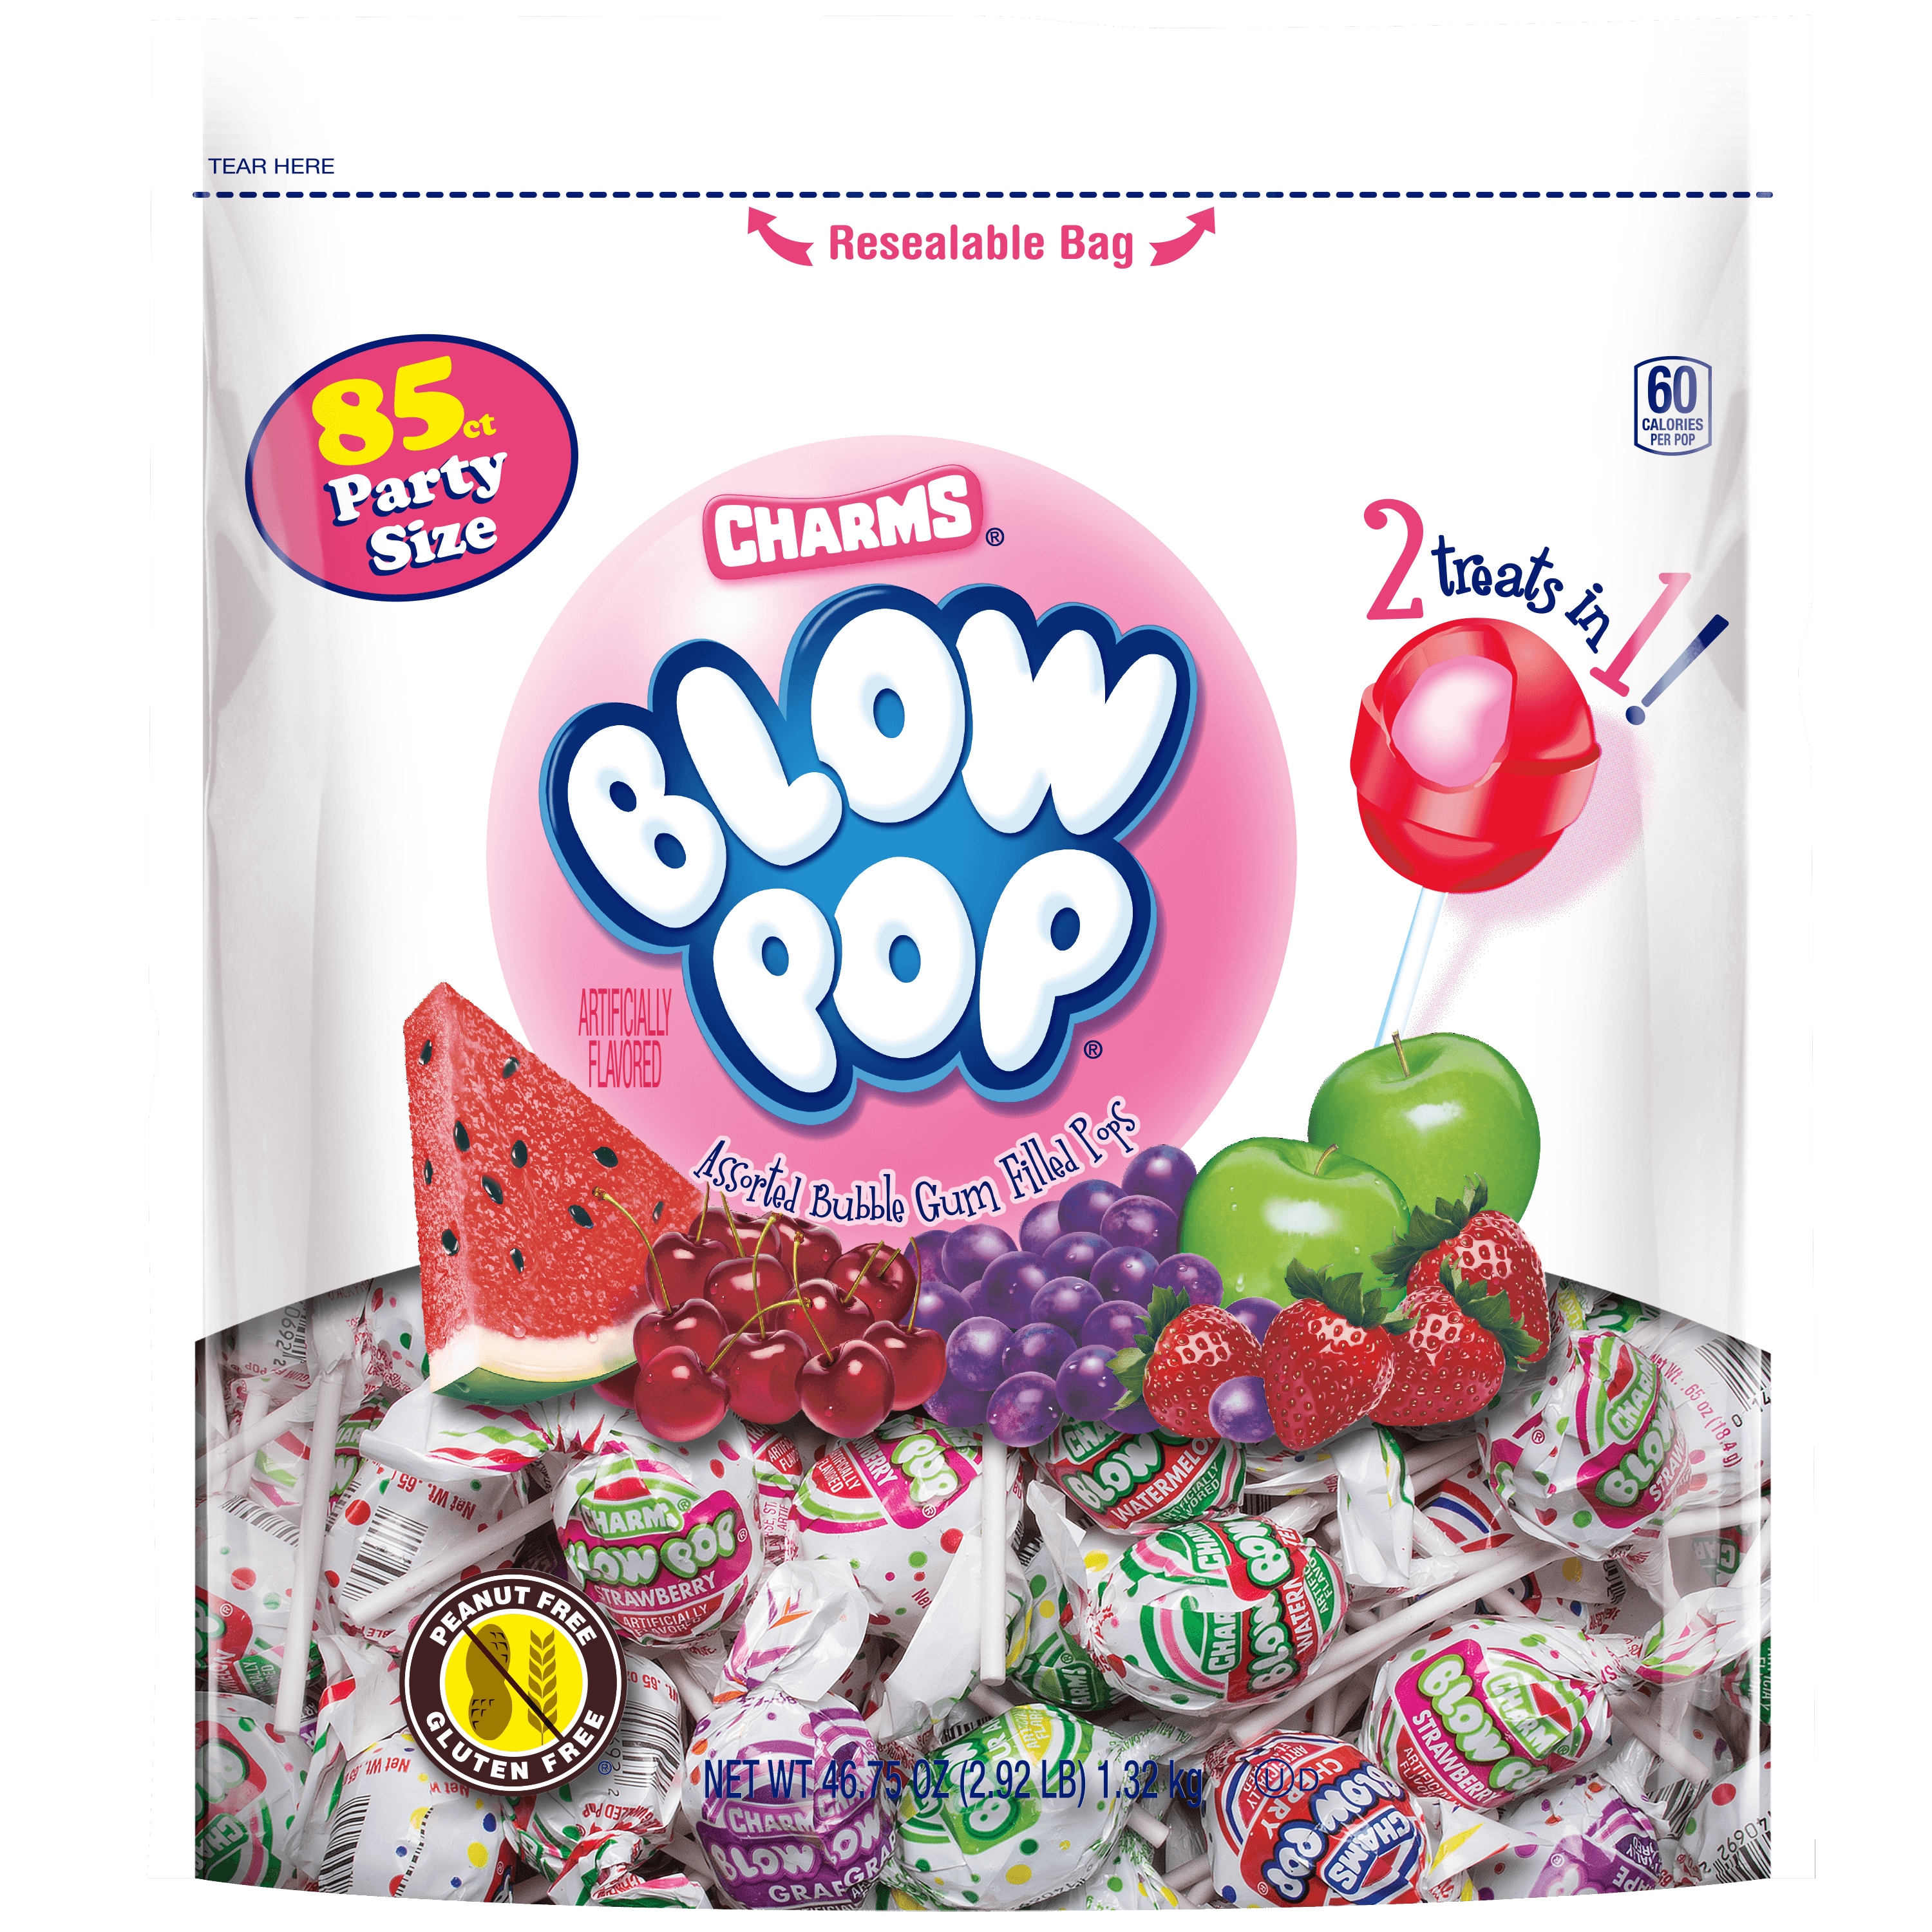 Charms Blow Pop, Gluten Free, Assorted Flavors Bubble Gum Lollipops, 46.75 oz Resealable Bag